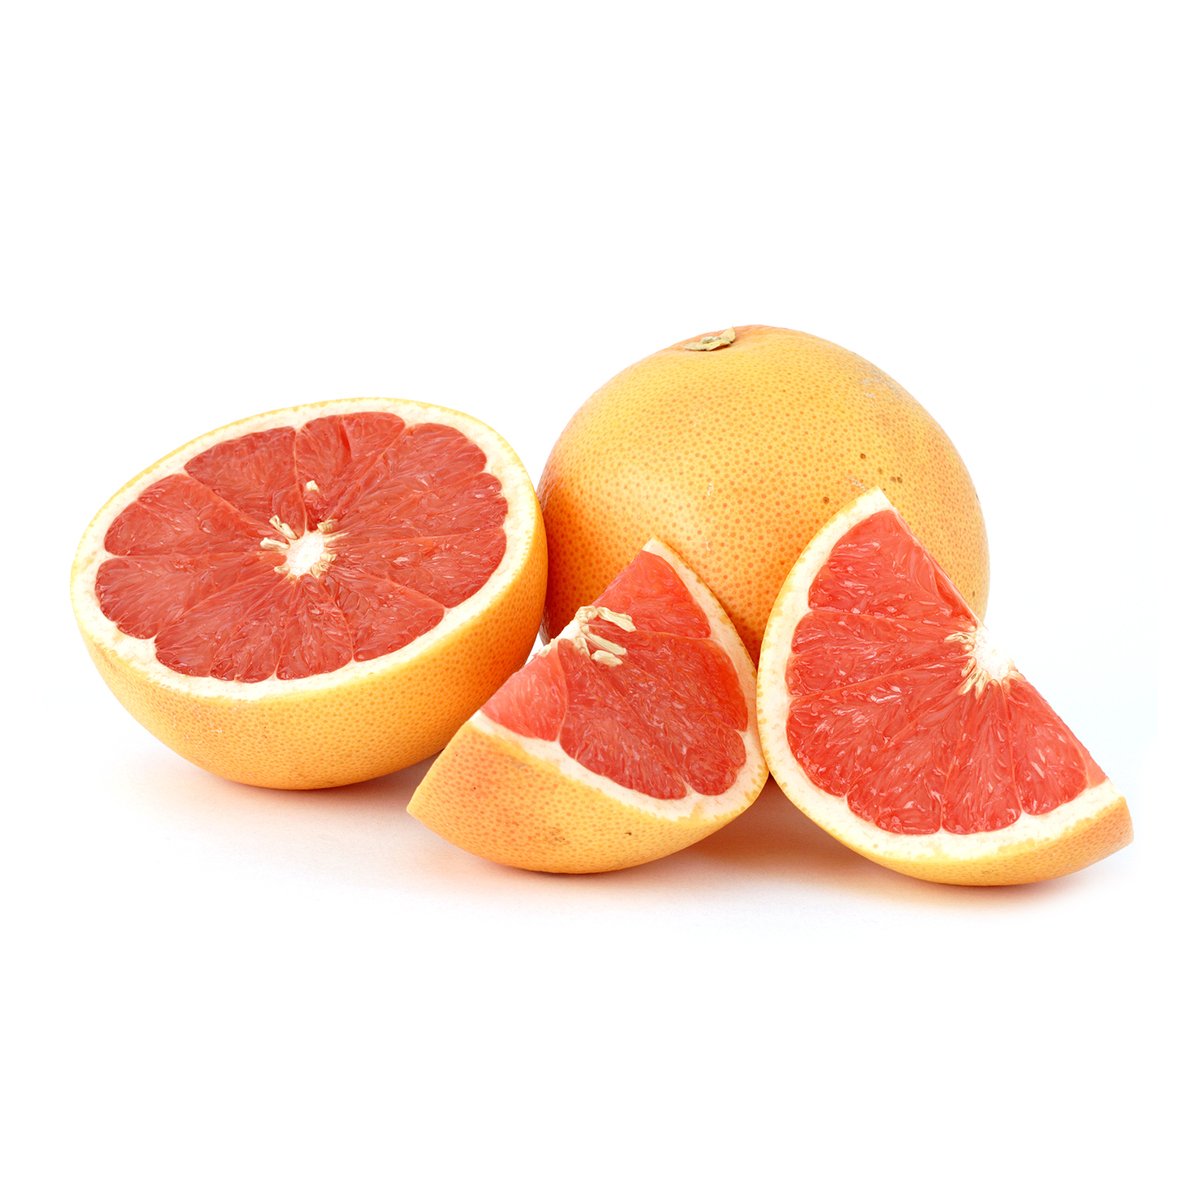 Grapefruit 1Kg Approx Weight